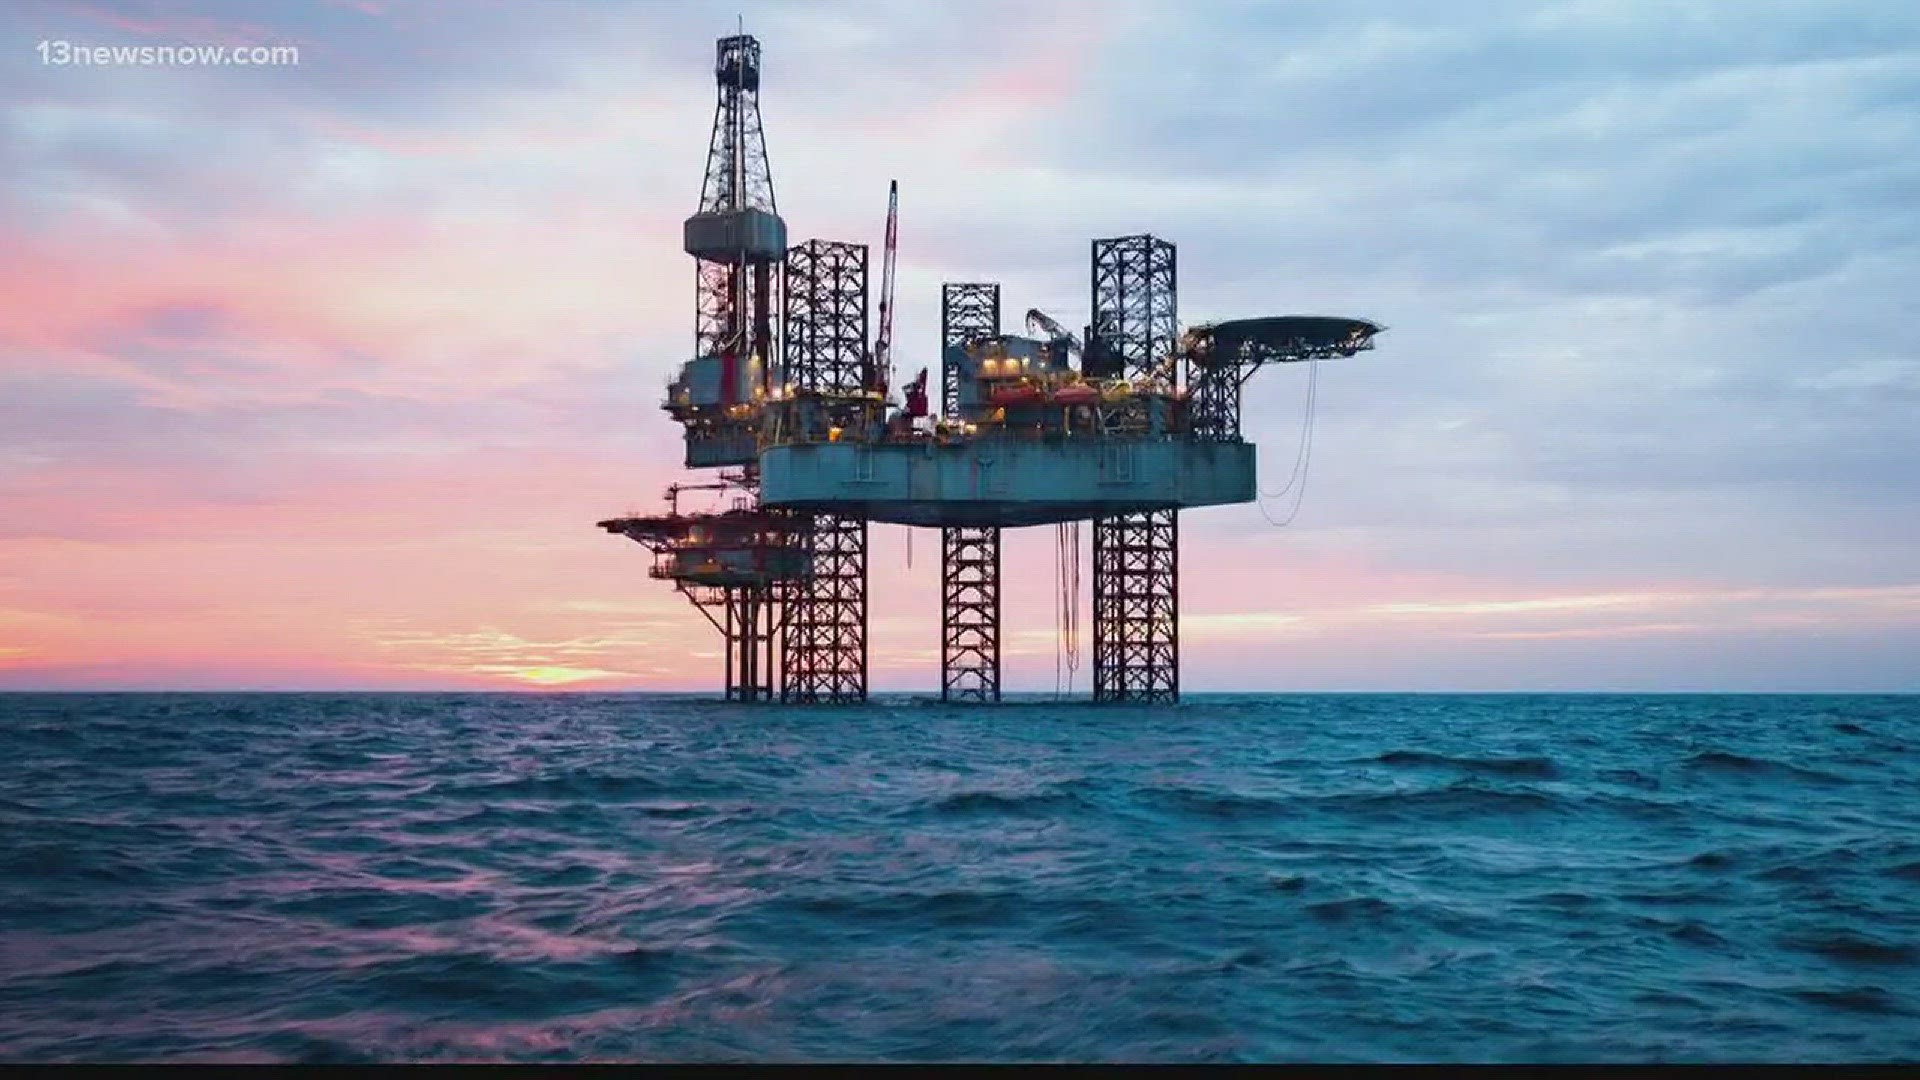 Senator Tim Kaine to discuss offshore drilling